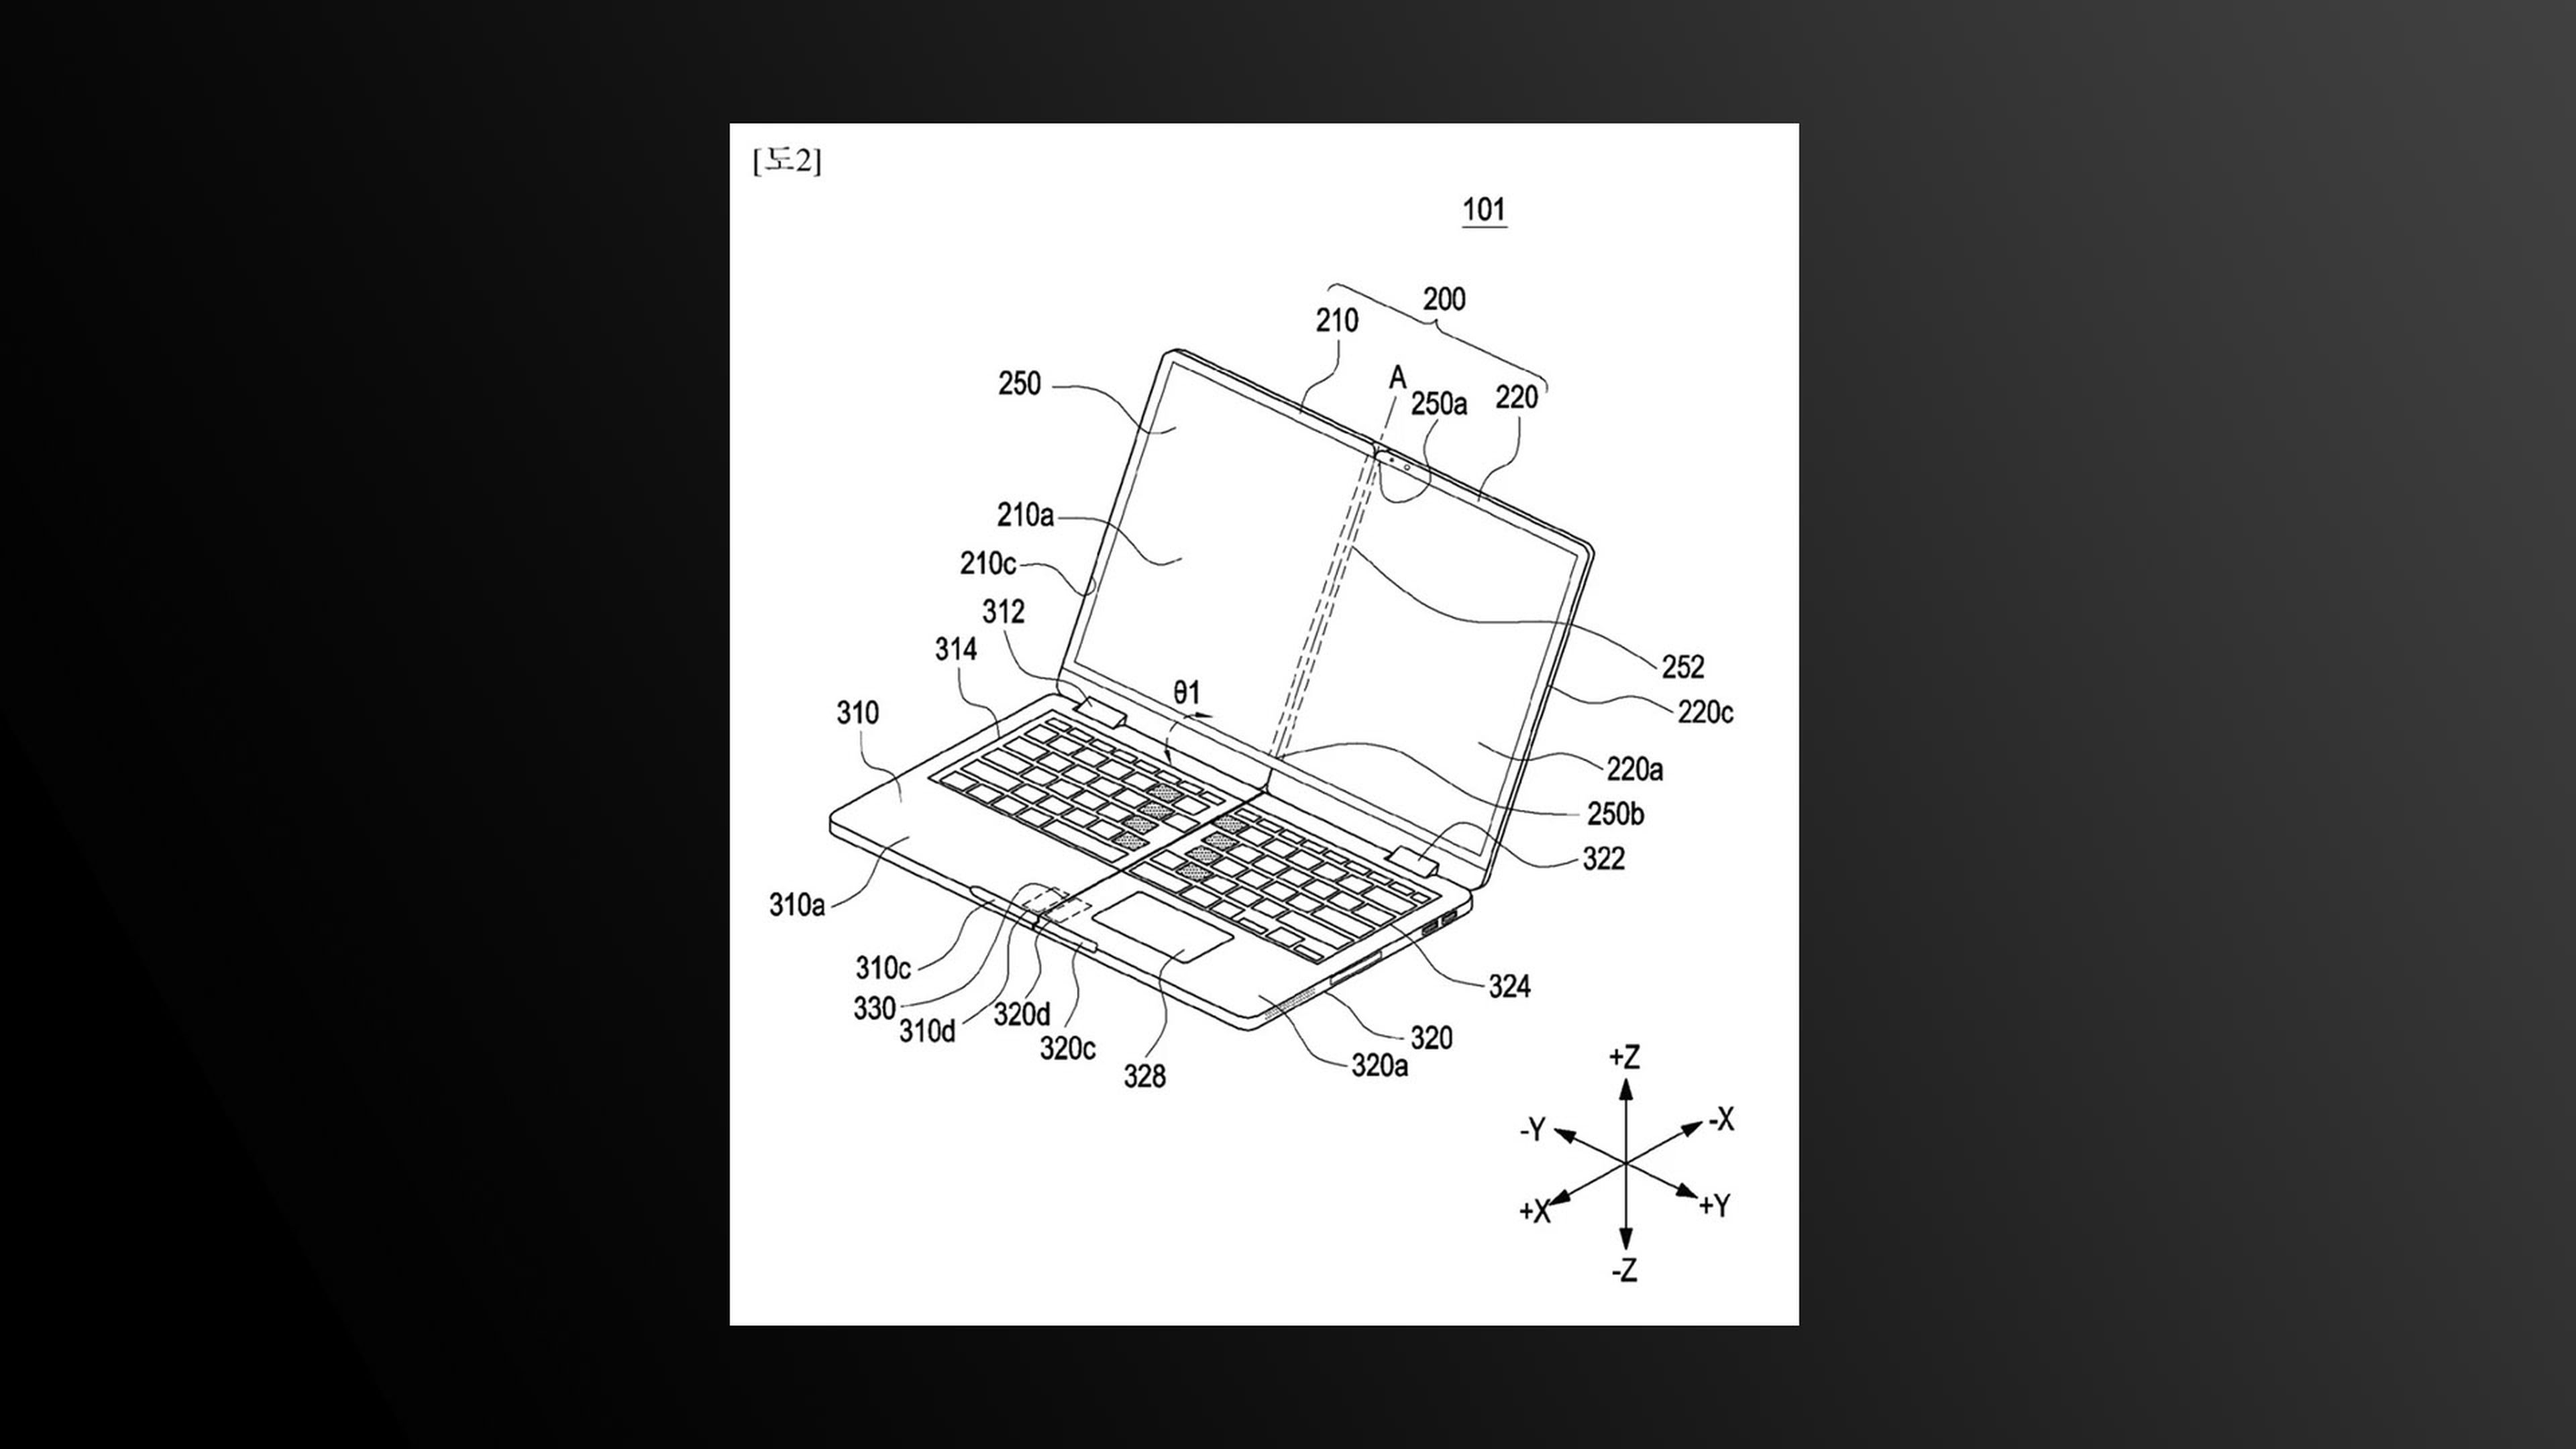 Samsung prepara un portátil que se pliega dos veces incluida su pantalla